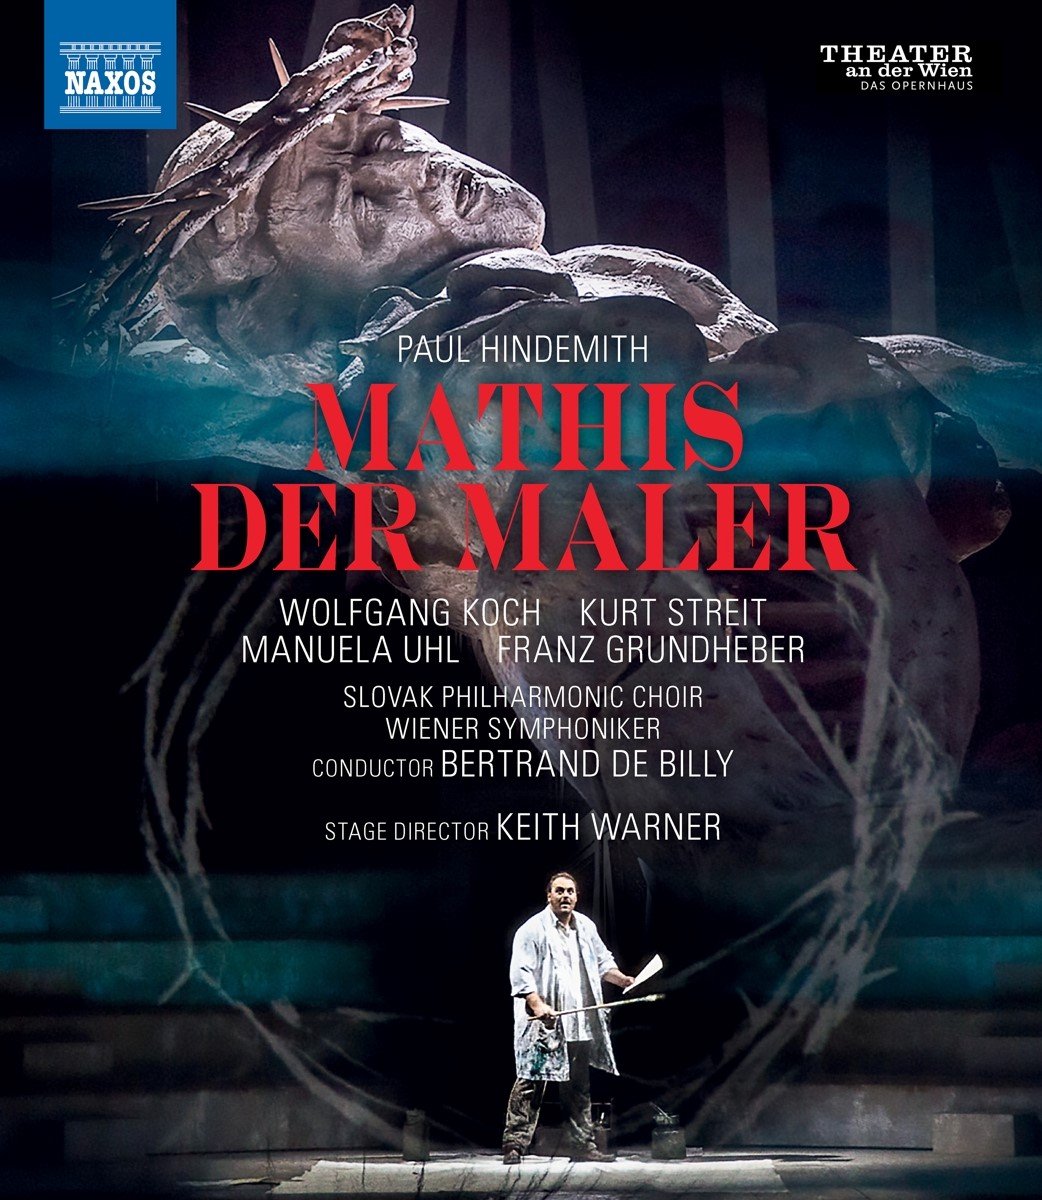 Manuela Uhl - Kurt Streit - Wolfgang Koch - Franz - Mathis Der Maler (Blu-ray)